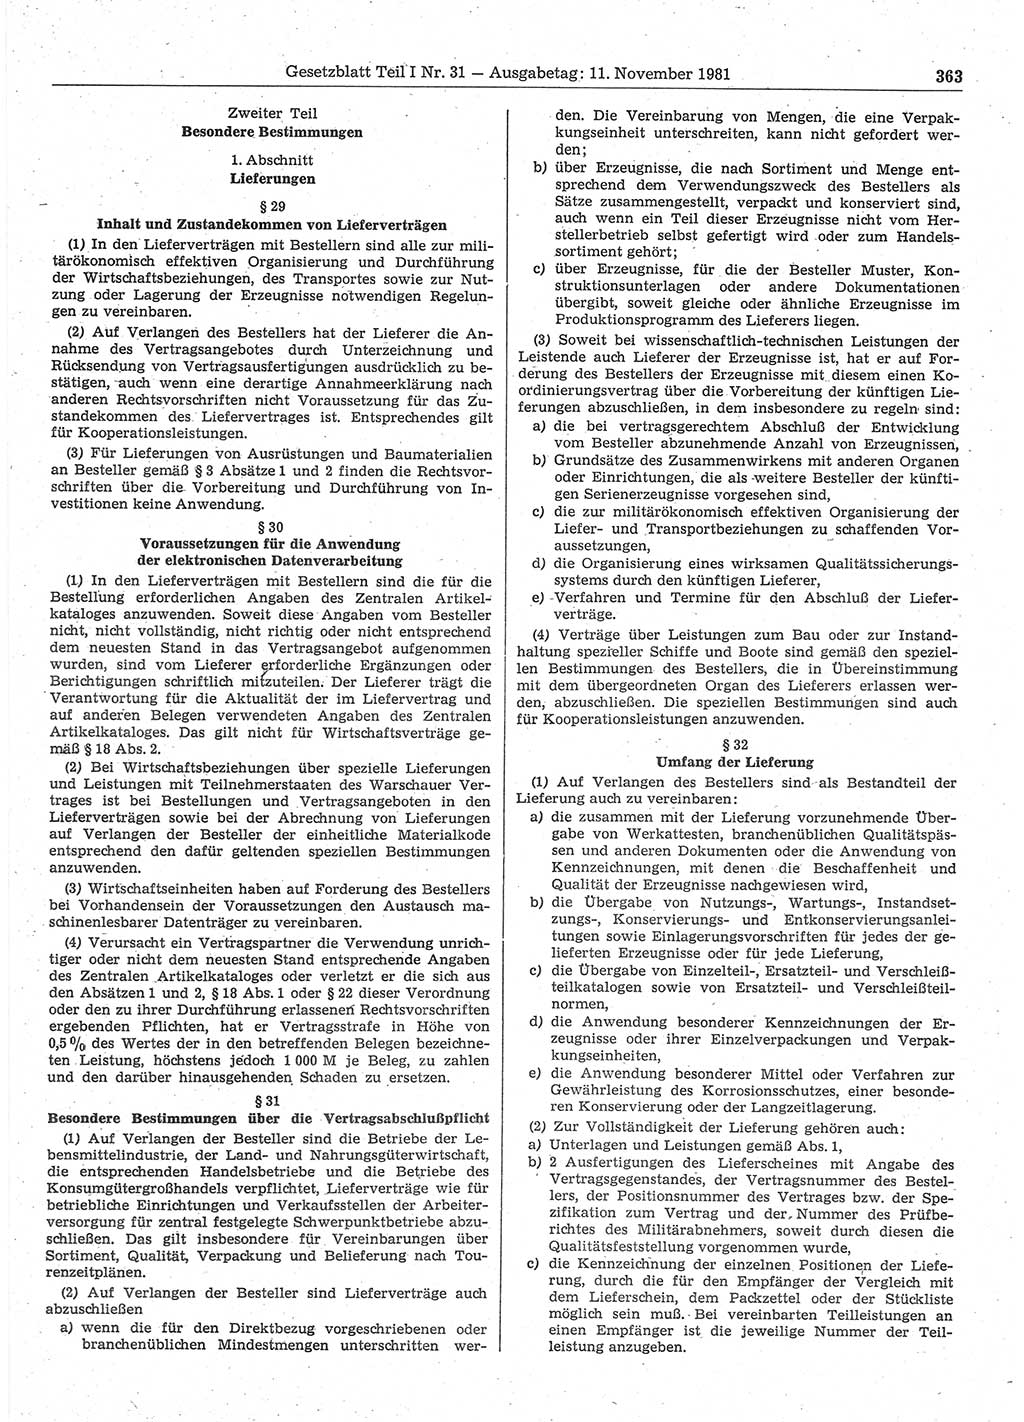 Gesetzblatt (GBl.) der Deutschen Demokratischen Republik (DDR) Teil Ⅰ 1981, Seite 363 (GBl. DDR Ⅰ 1981, S. 363)